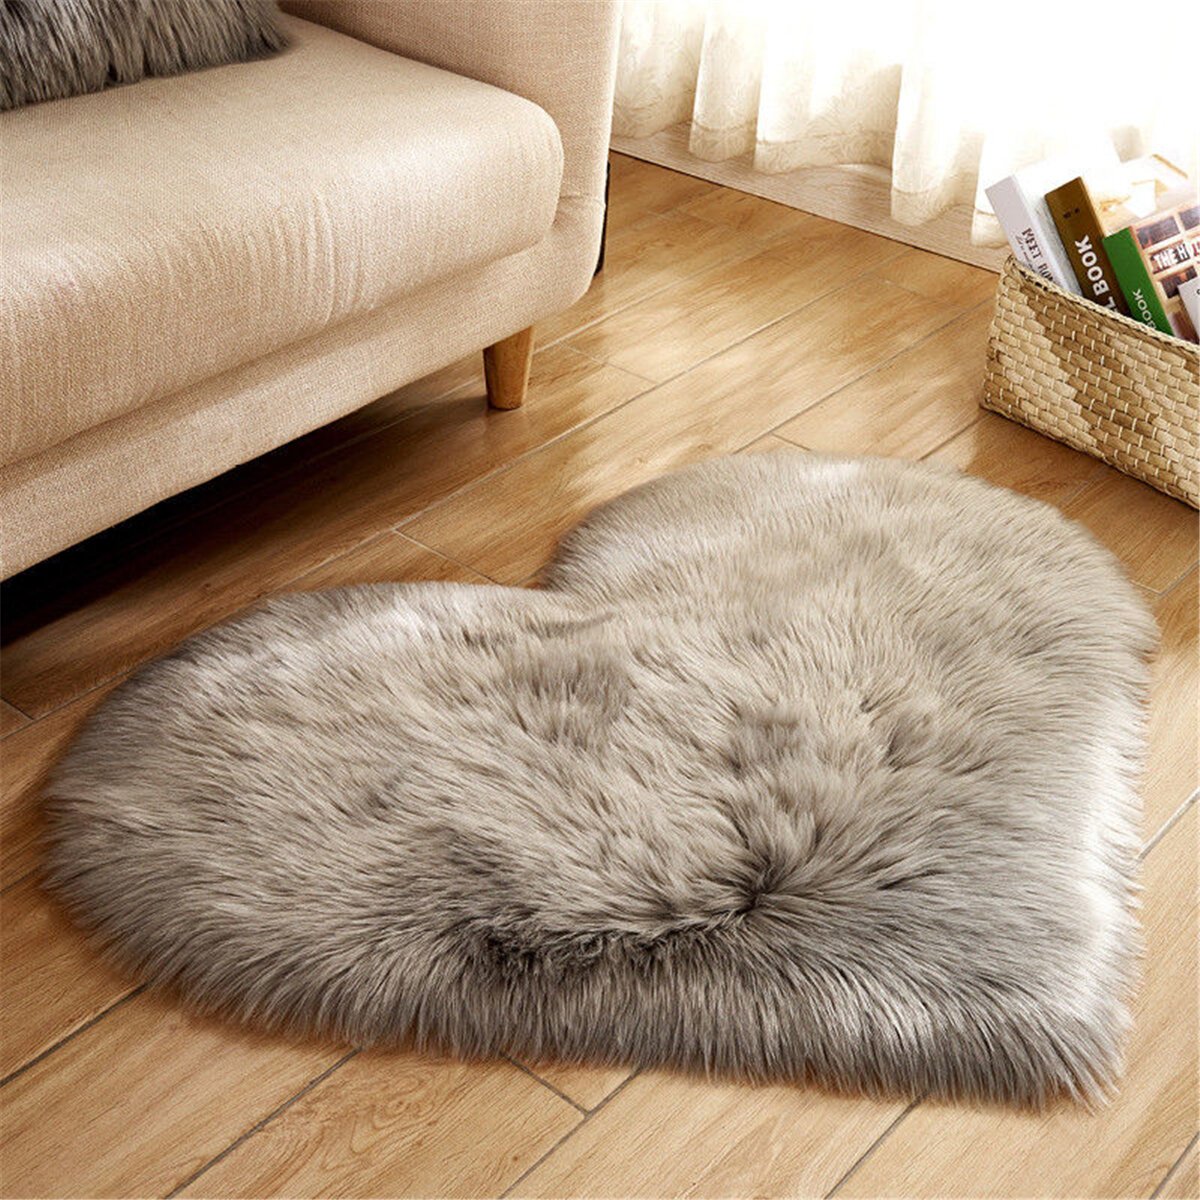 Heart Shape Long Plush Carpet Home Living Room Bedding Decor Carpet Soft Floor Mat